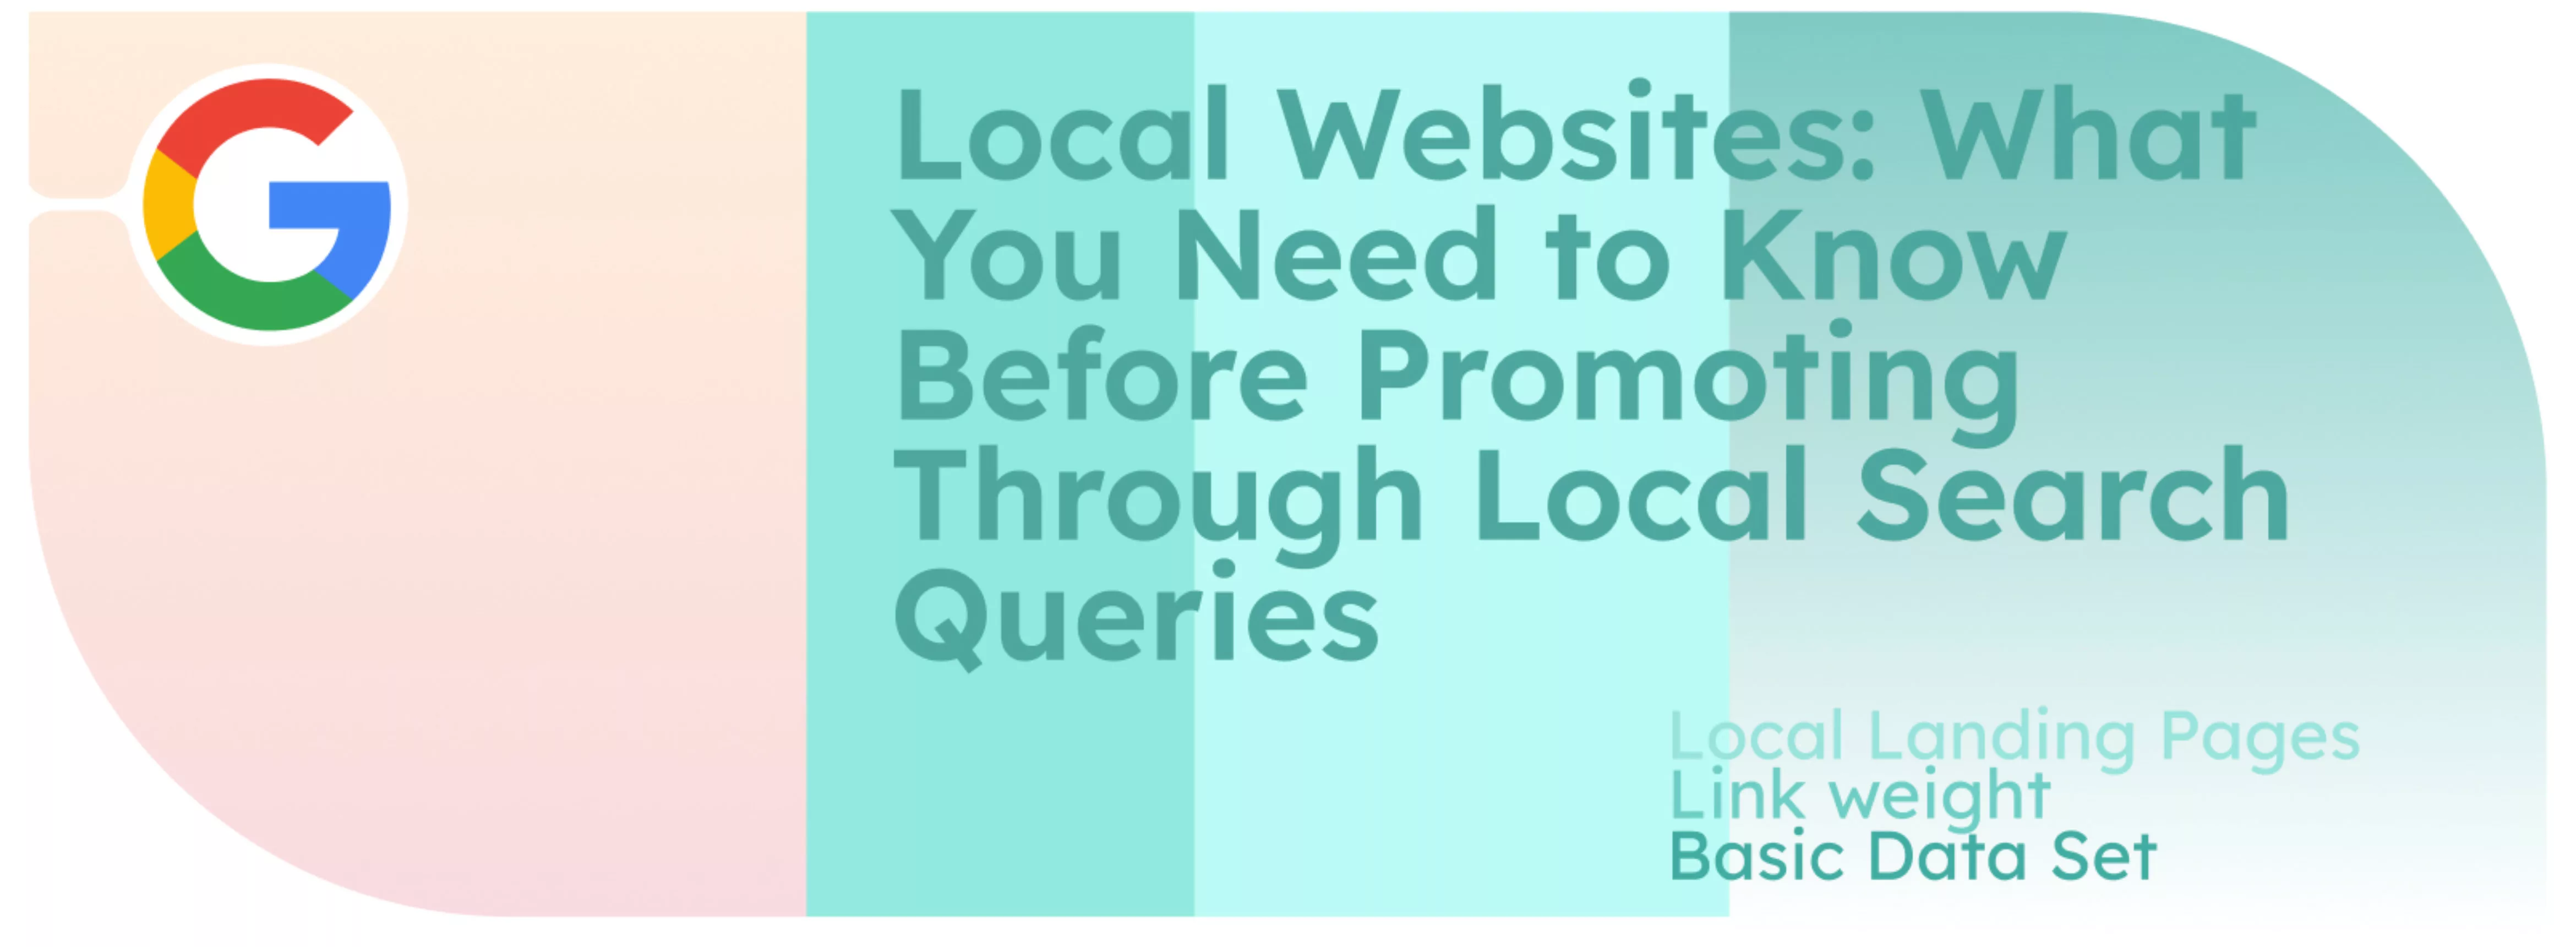 Websites locais: O que precisa de saber antes de promover através de consultas de pesquisa local